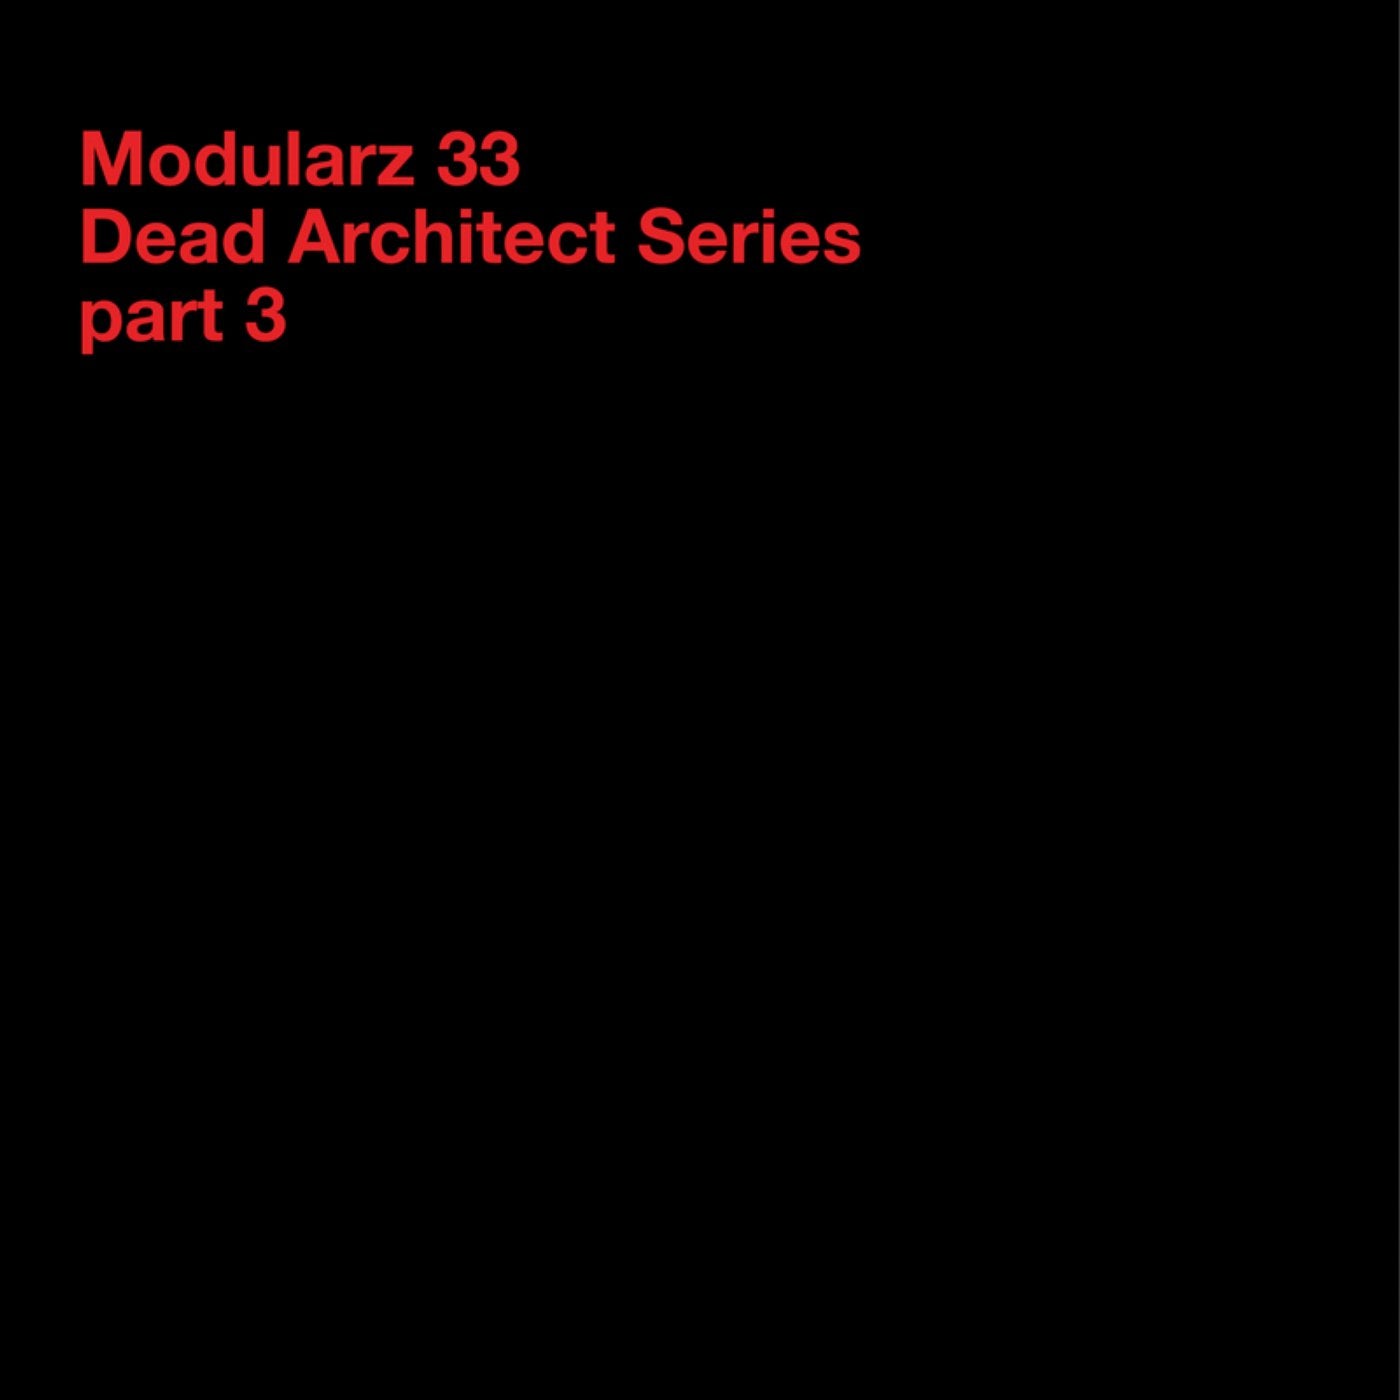 Dead Architect Series - Part 3